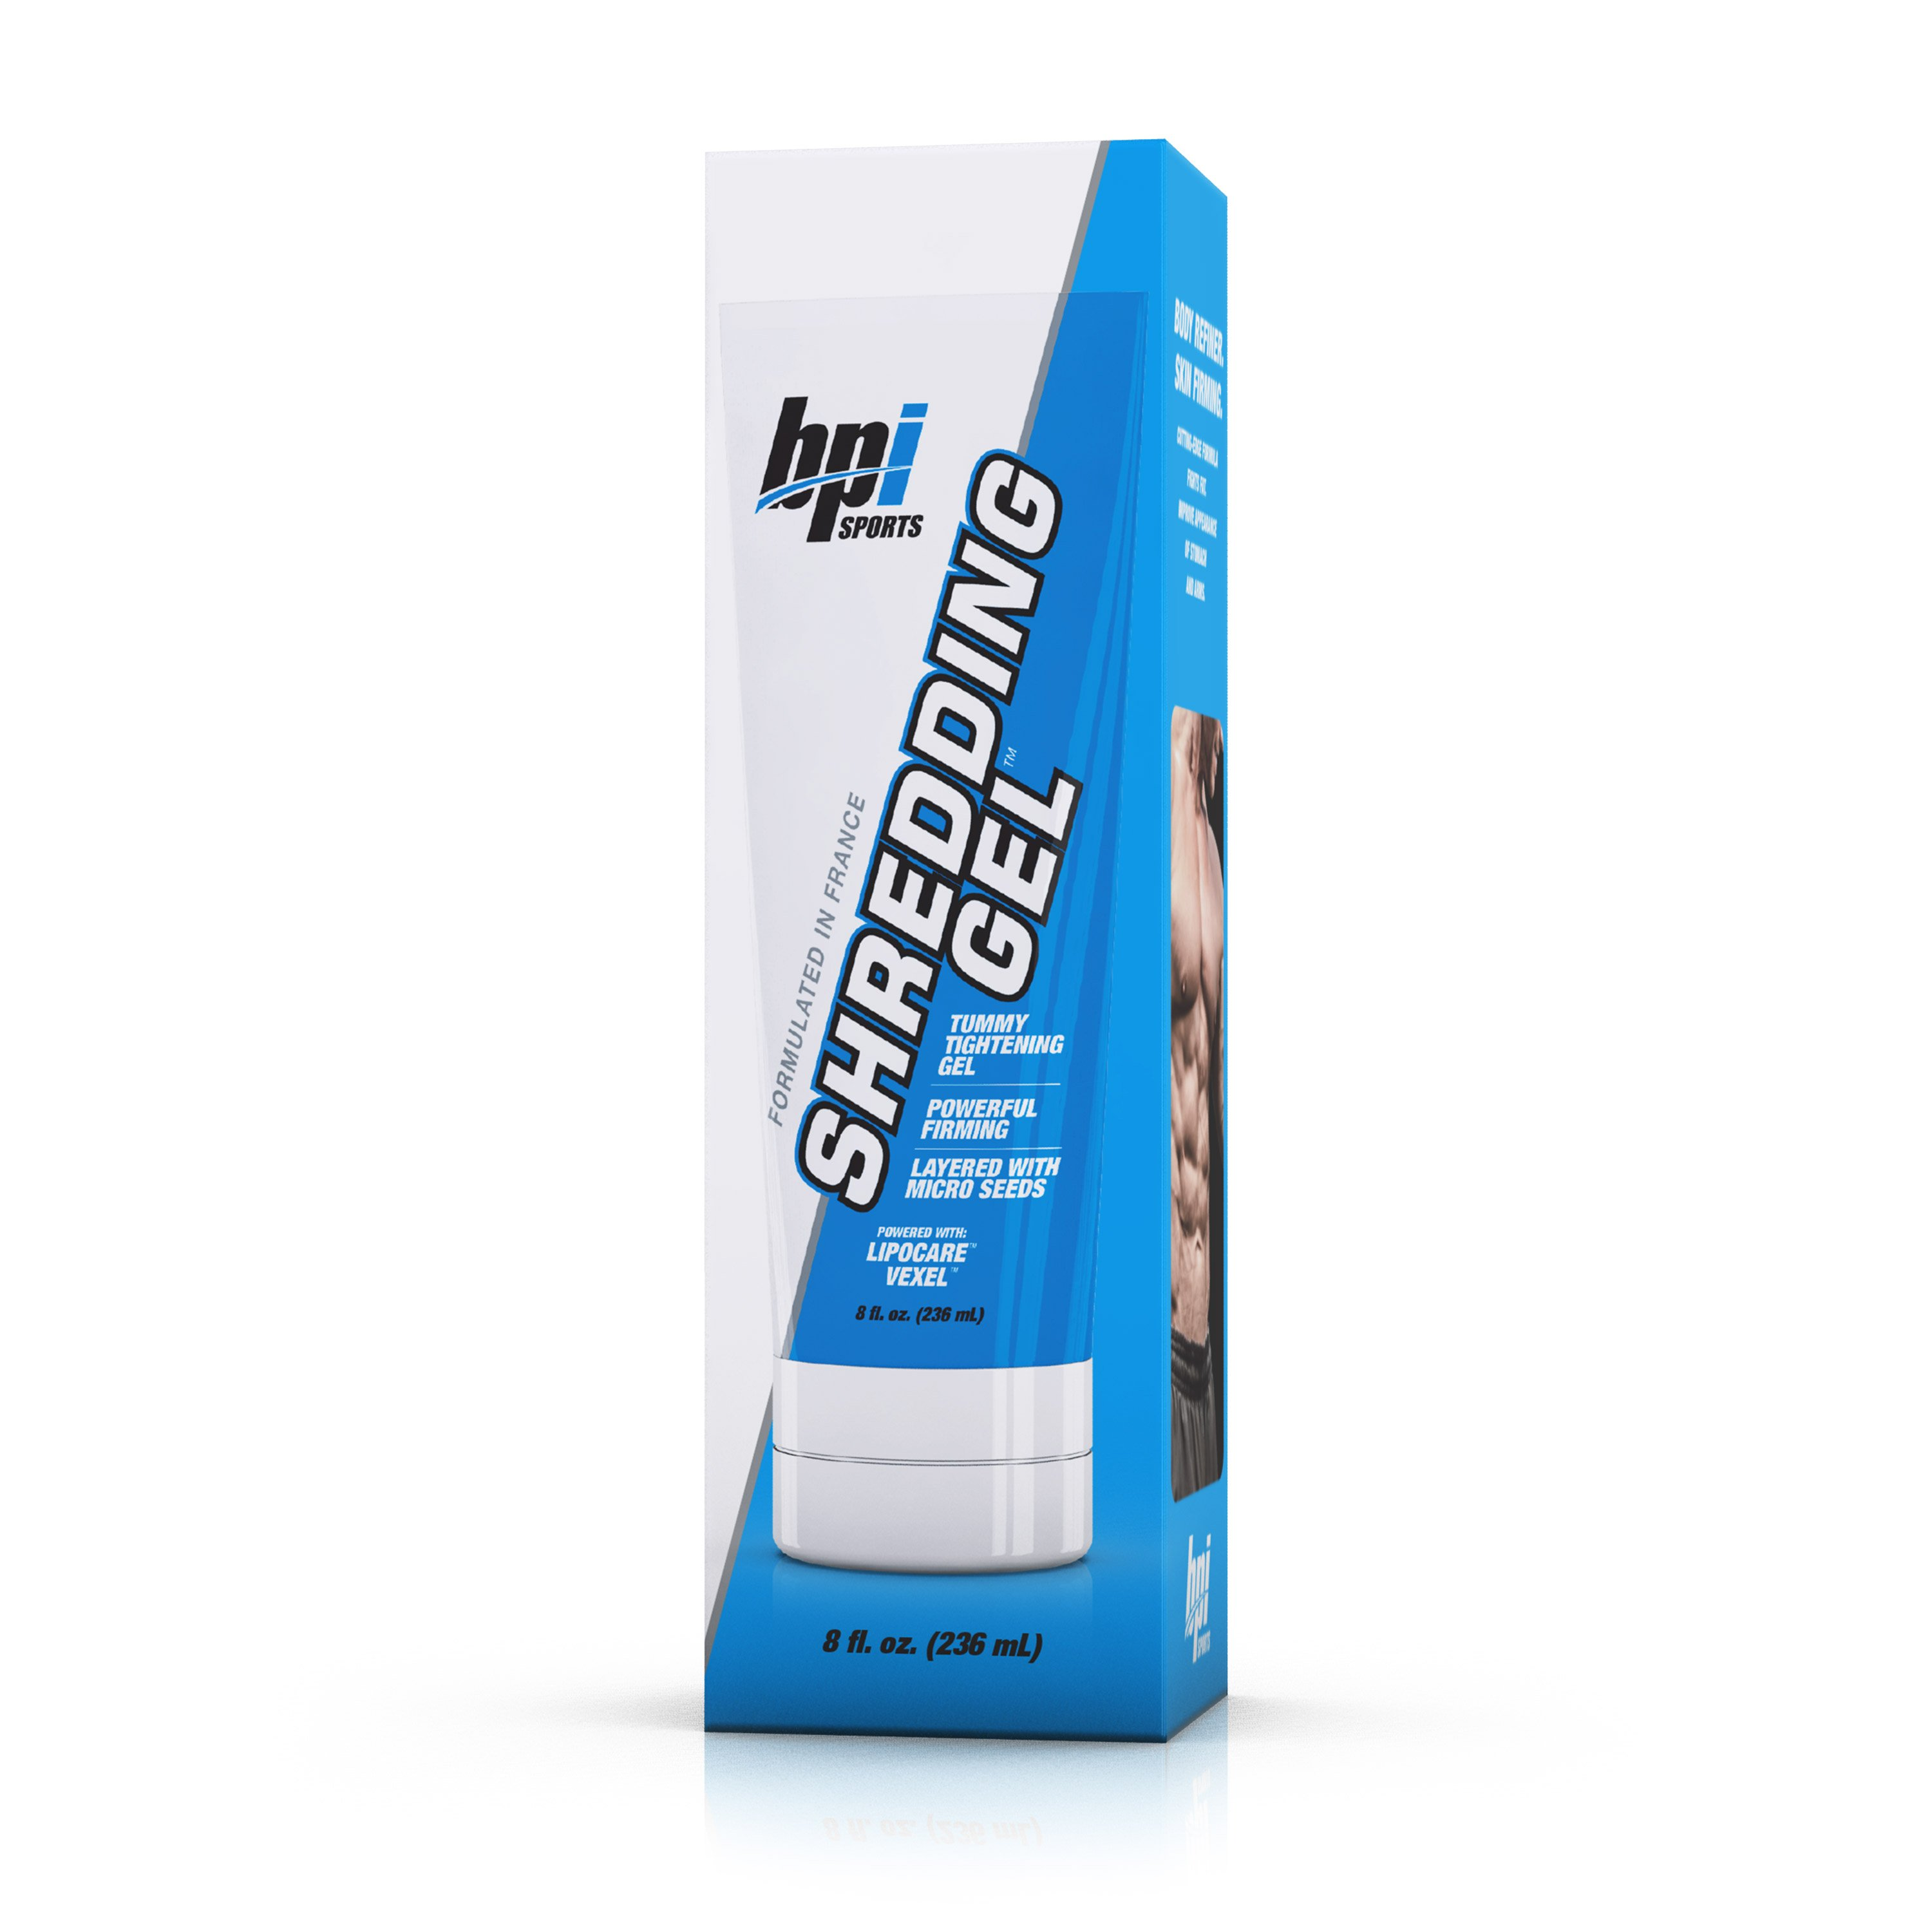 Packaging and tube of Shredding gel